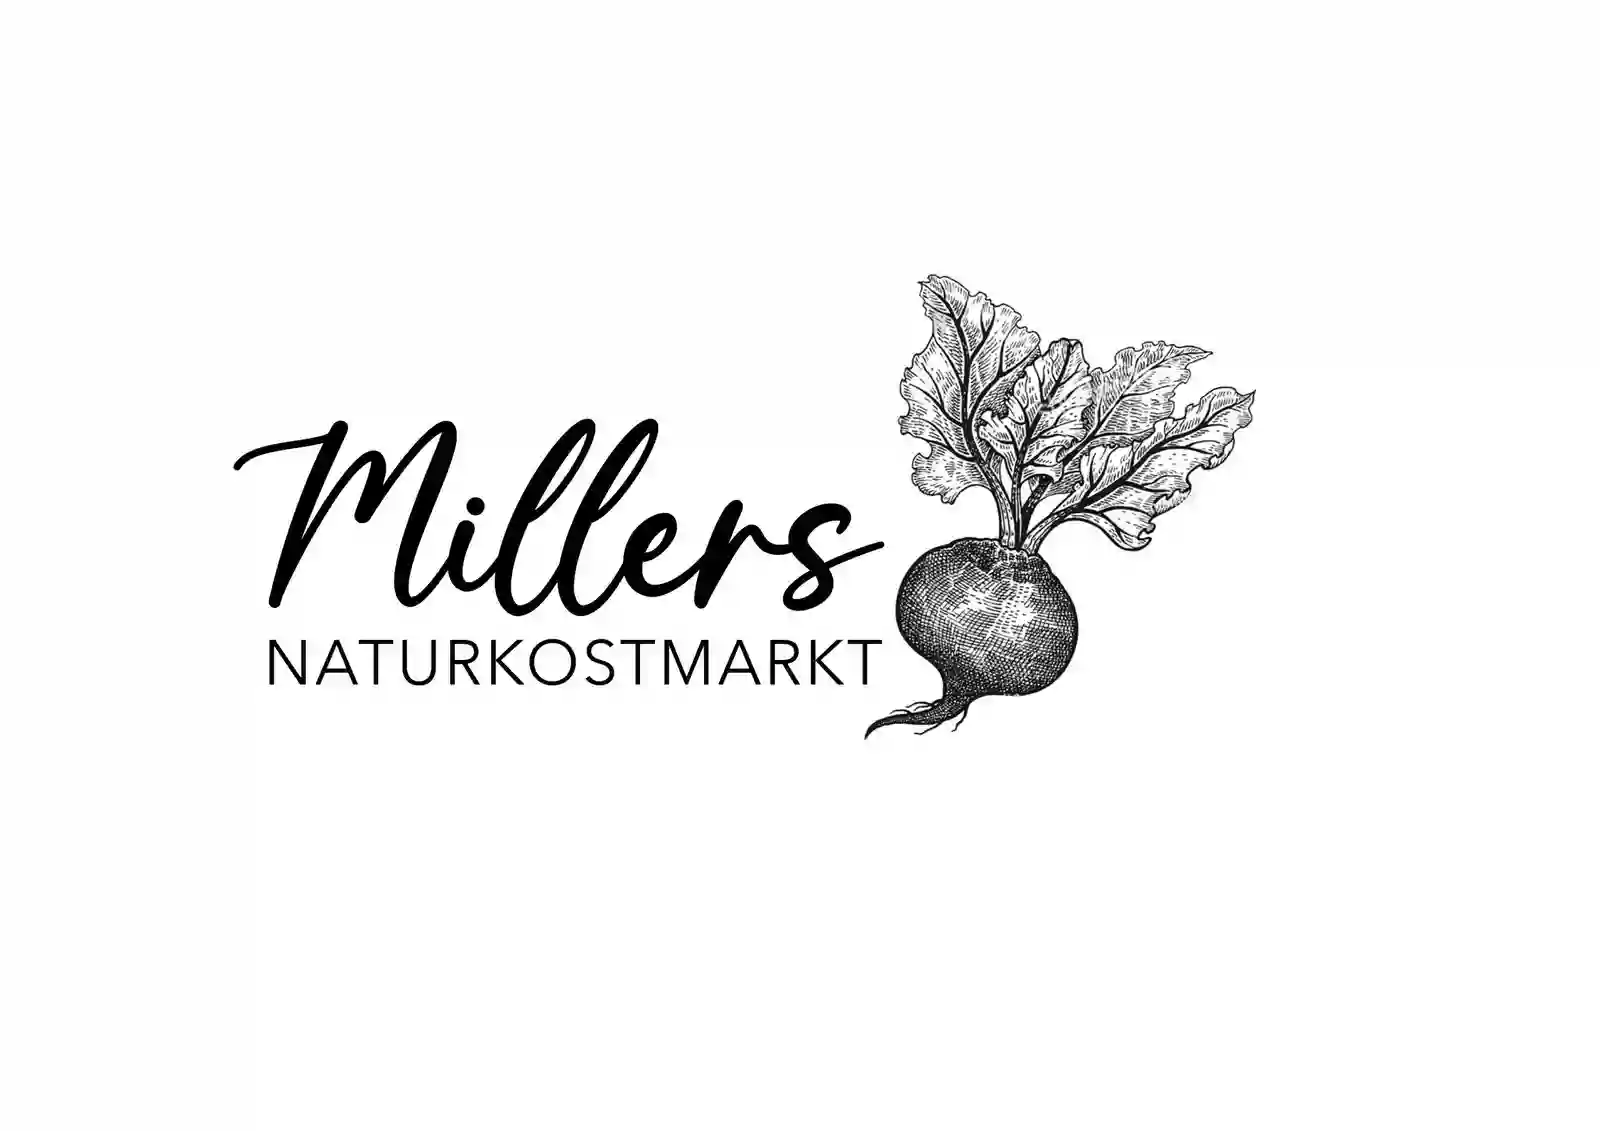 Millers Naturkostmarkt